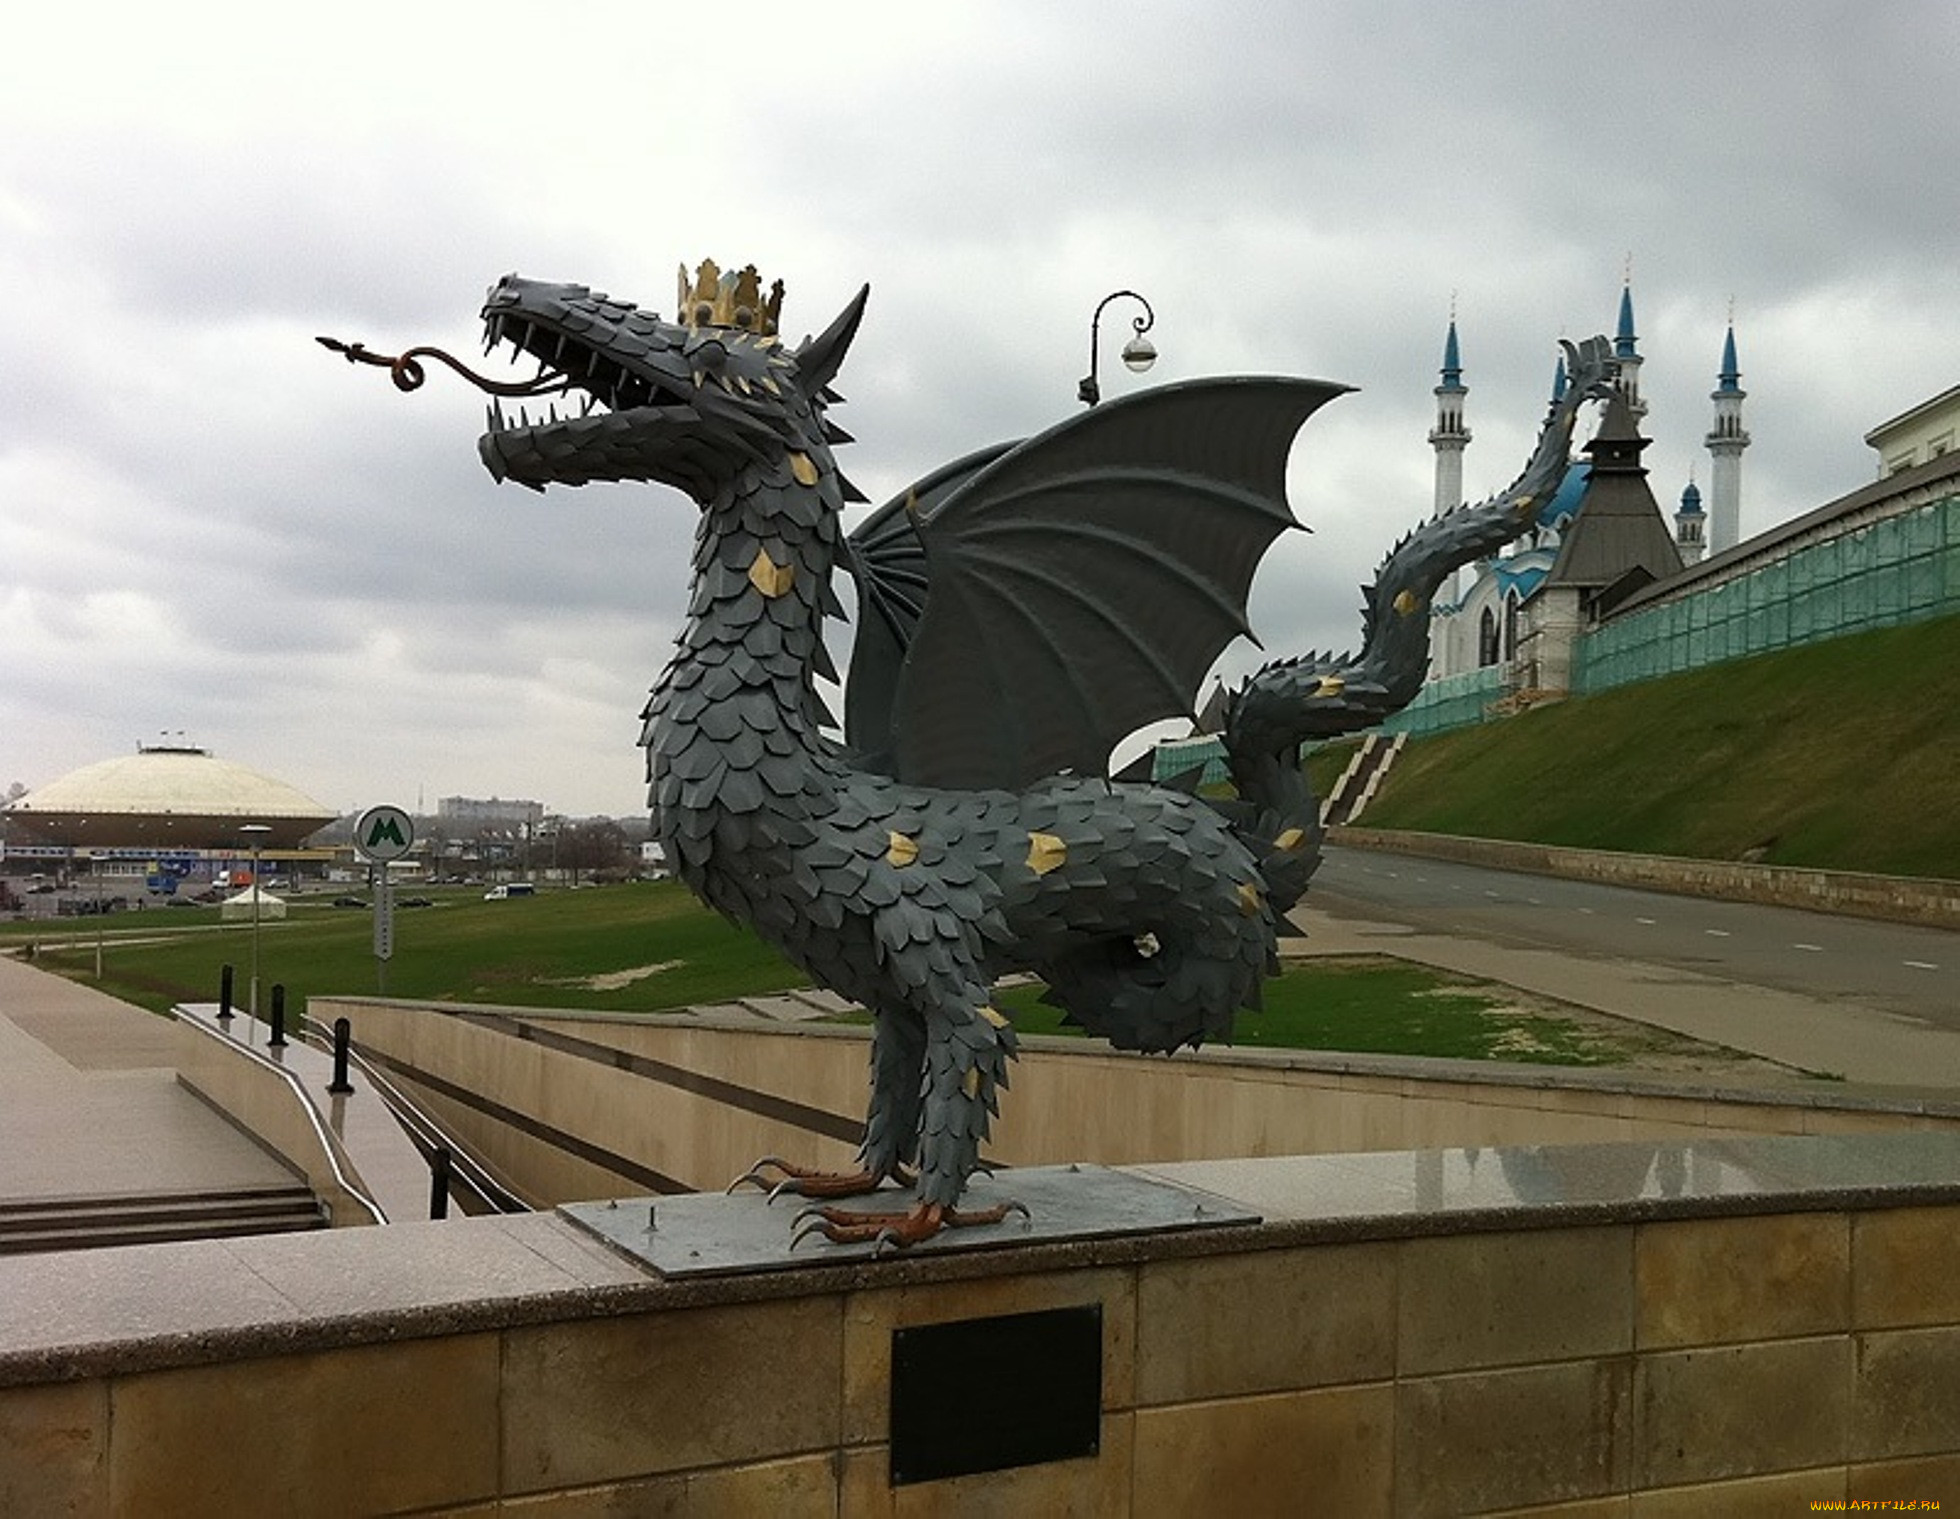 Памятник дракону Зиланту в Казани